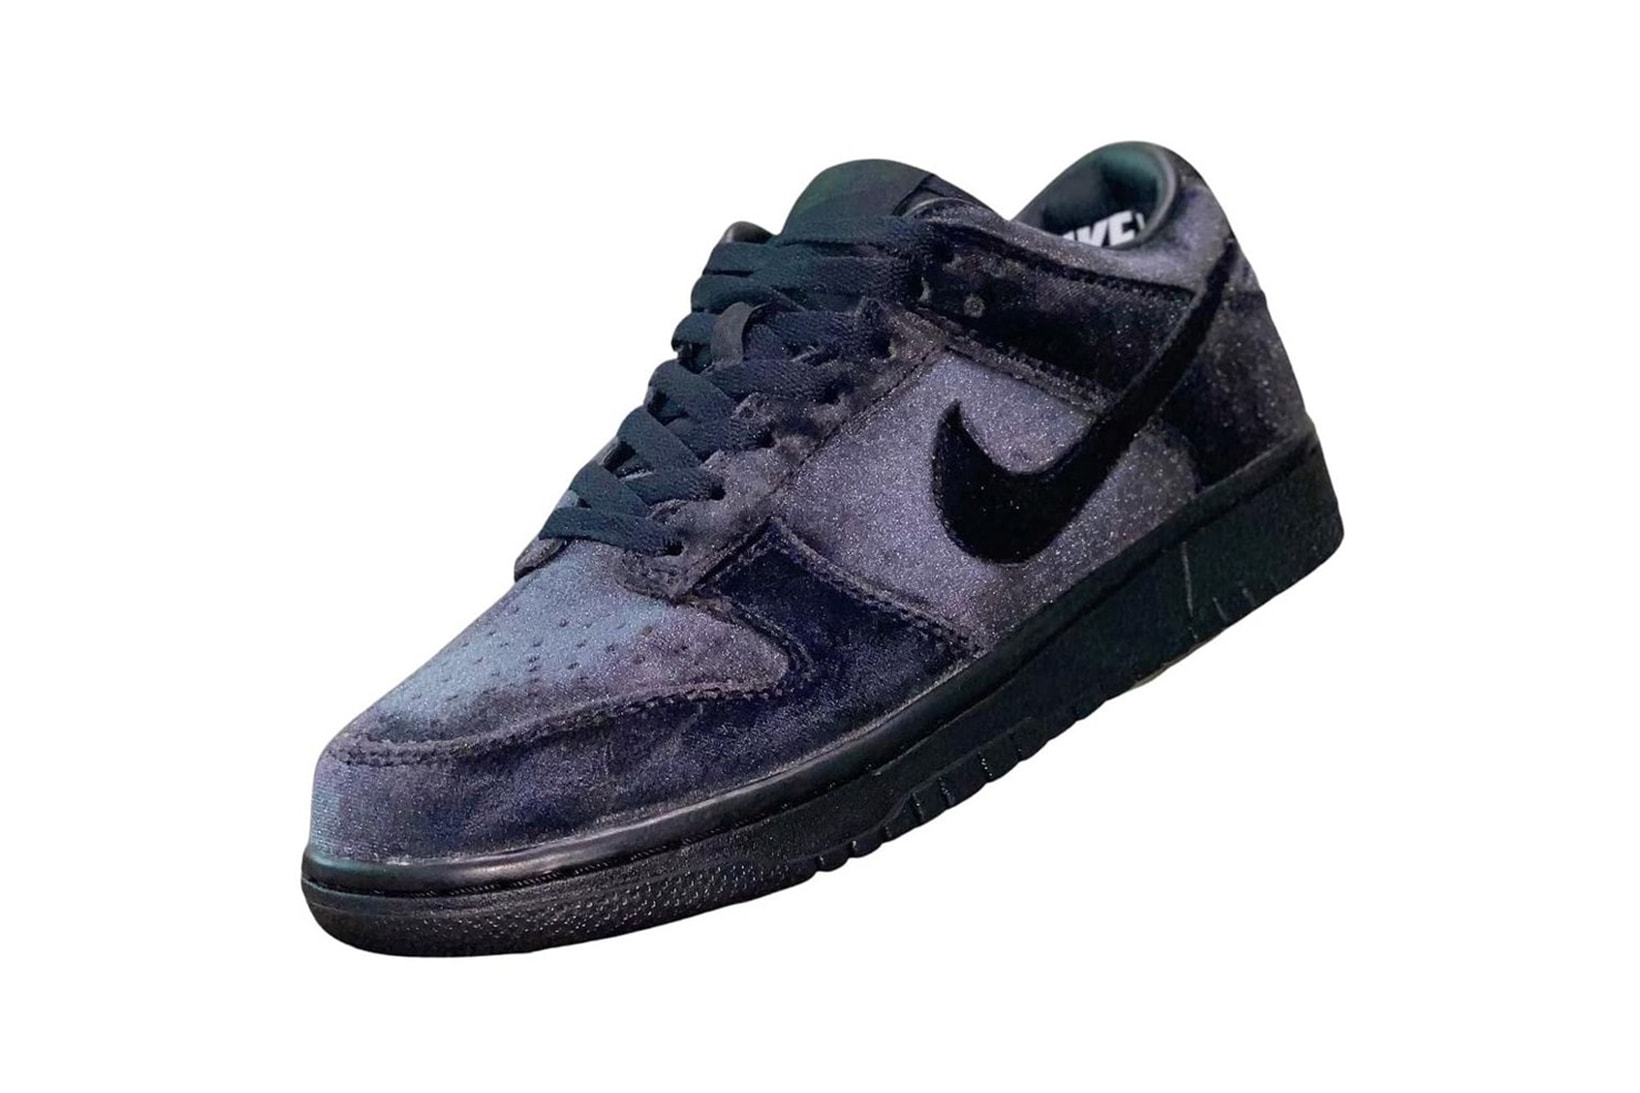 Dover Street Market DSM Nike Dunk Low Black Velour Sneakers Shoes Kicks Footwear